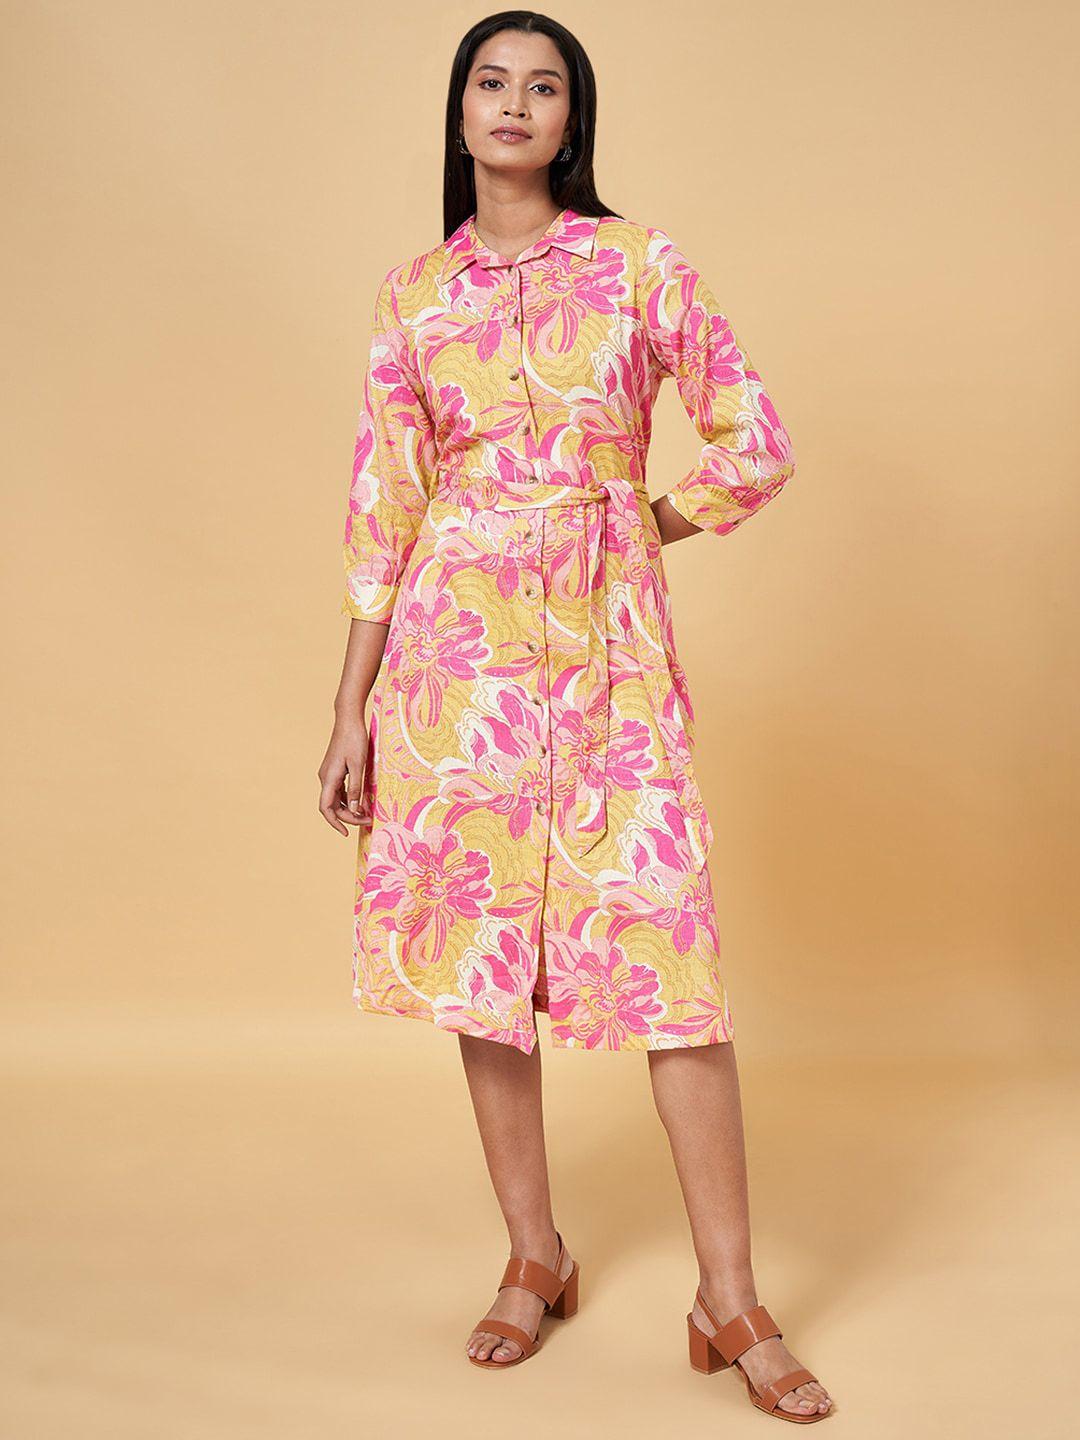 akkriti by pantaloons floral printed cuffed sleeves shirt midi dress